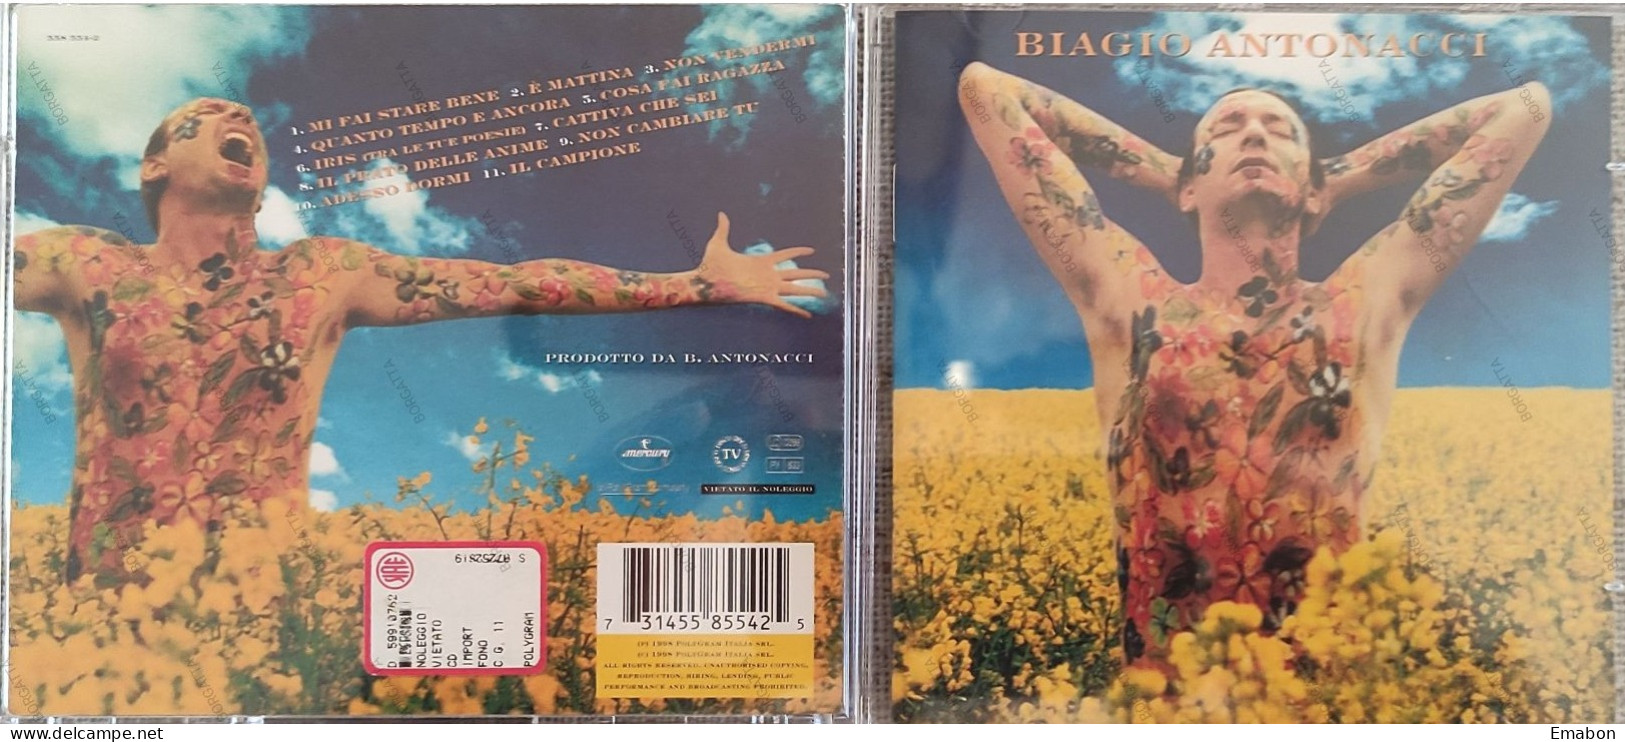 BORGATTA - ITALIANA - Cd  BIAGIO ANTONACCI - MI FAI STARE BENE  - POLYGRAM 1998 -  USATO In Buono Stato - Other - Italian Music